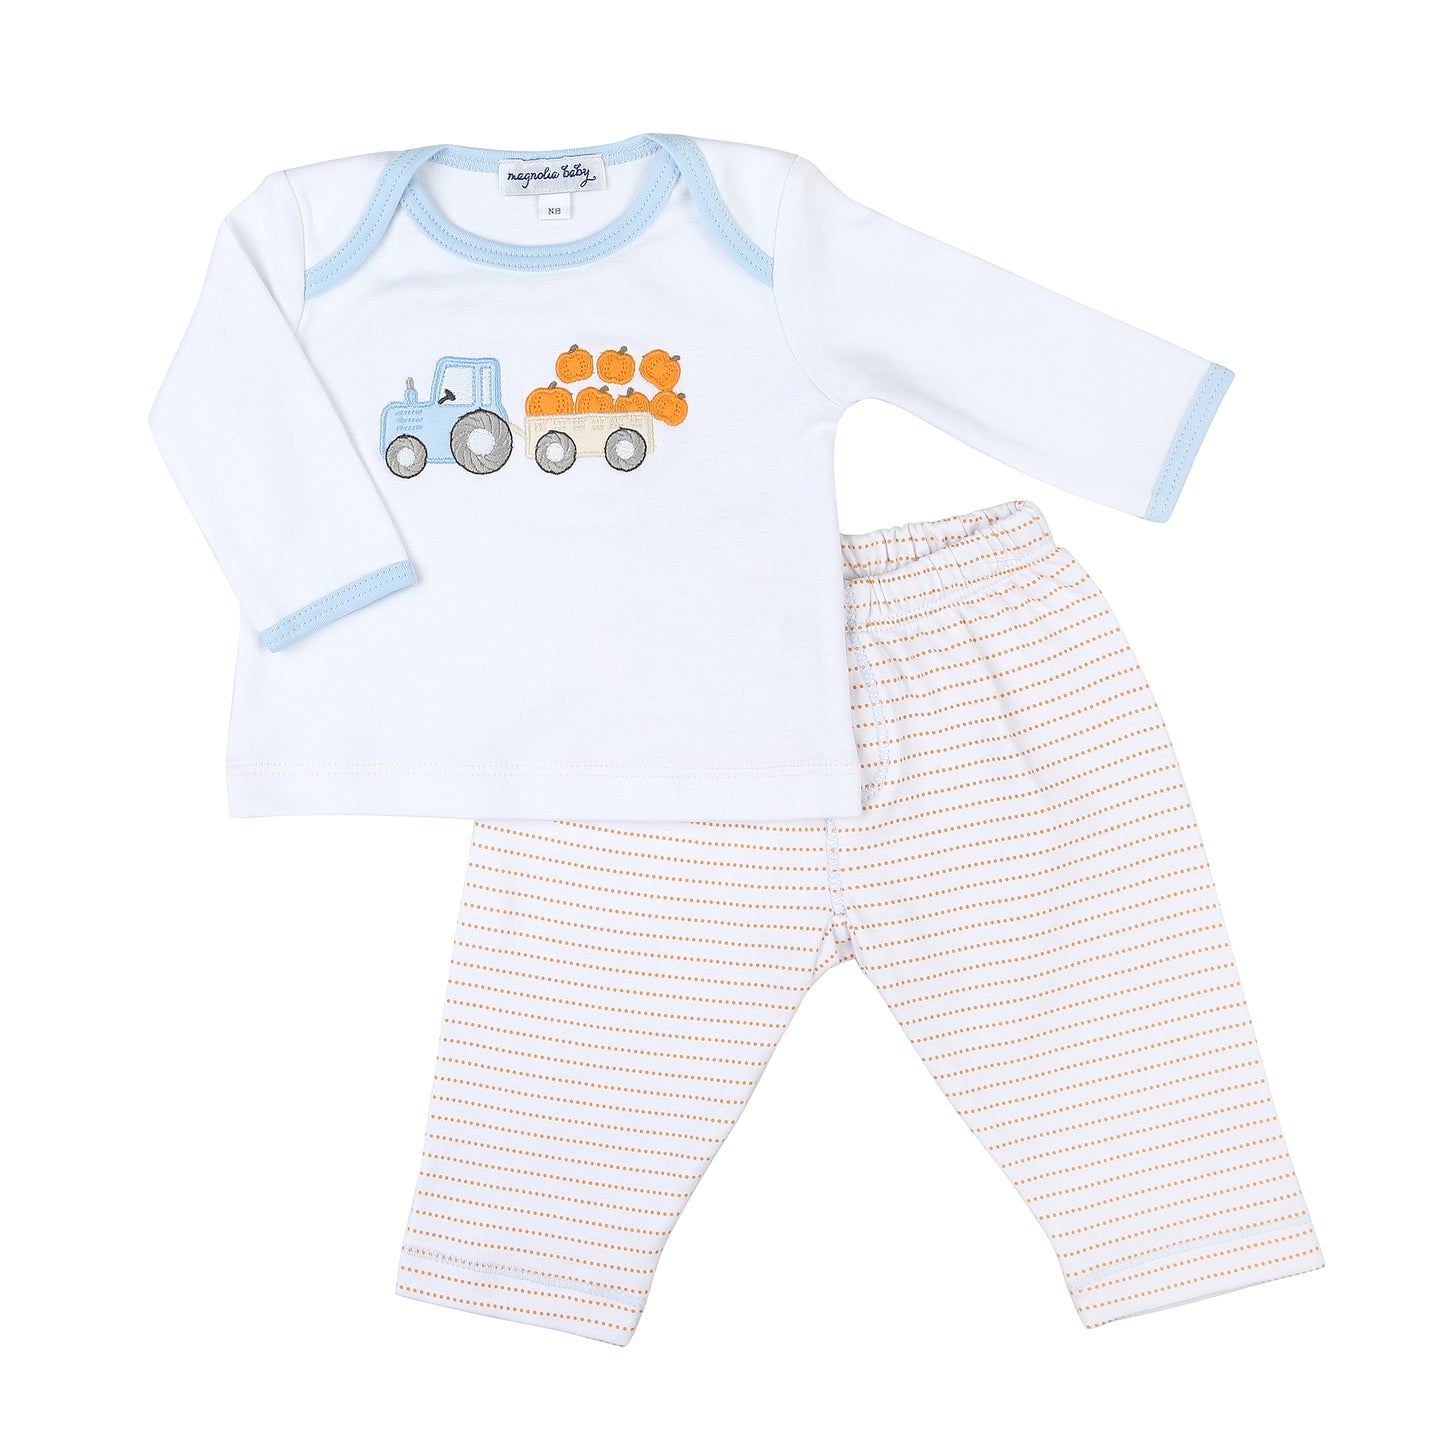 Happy Harvest Applique Toddler 2PC Shirt/Pant Set